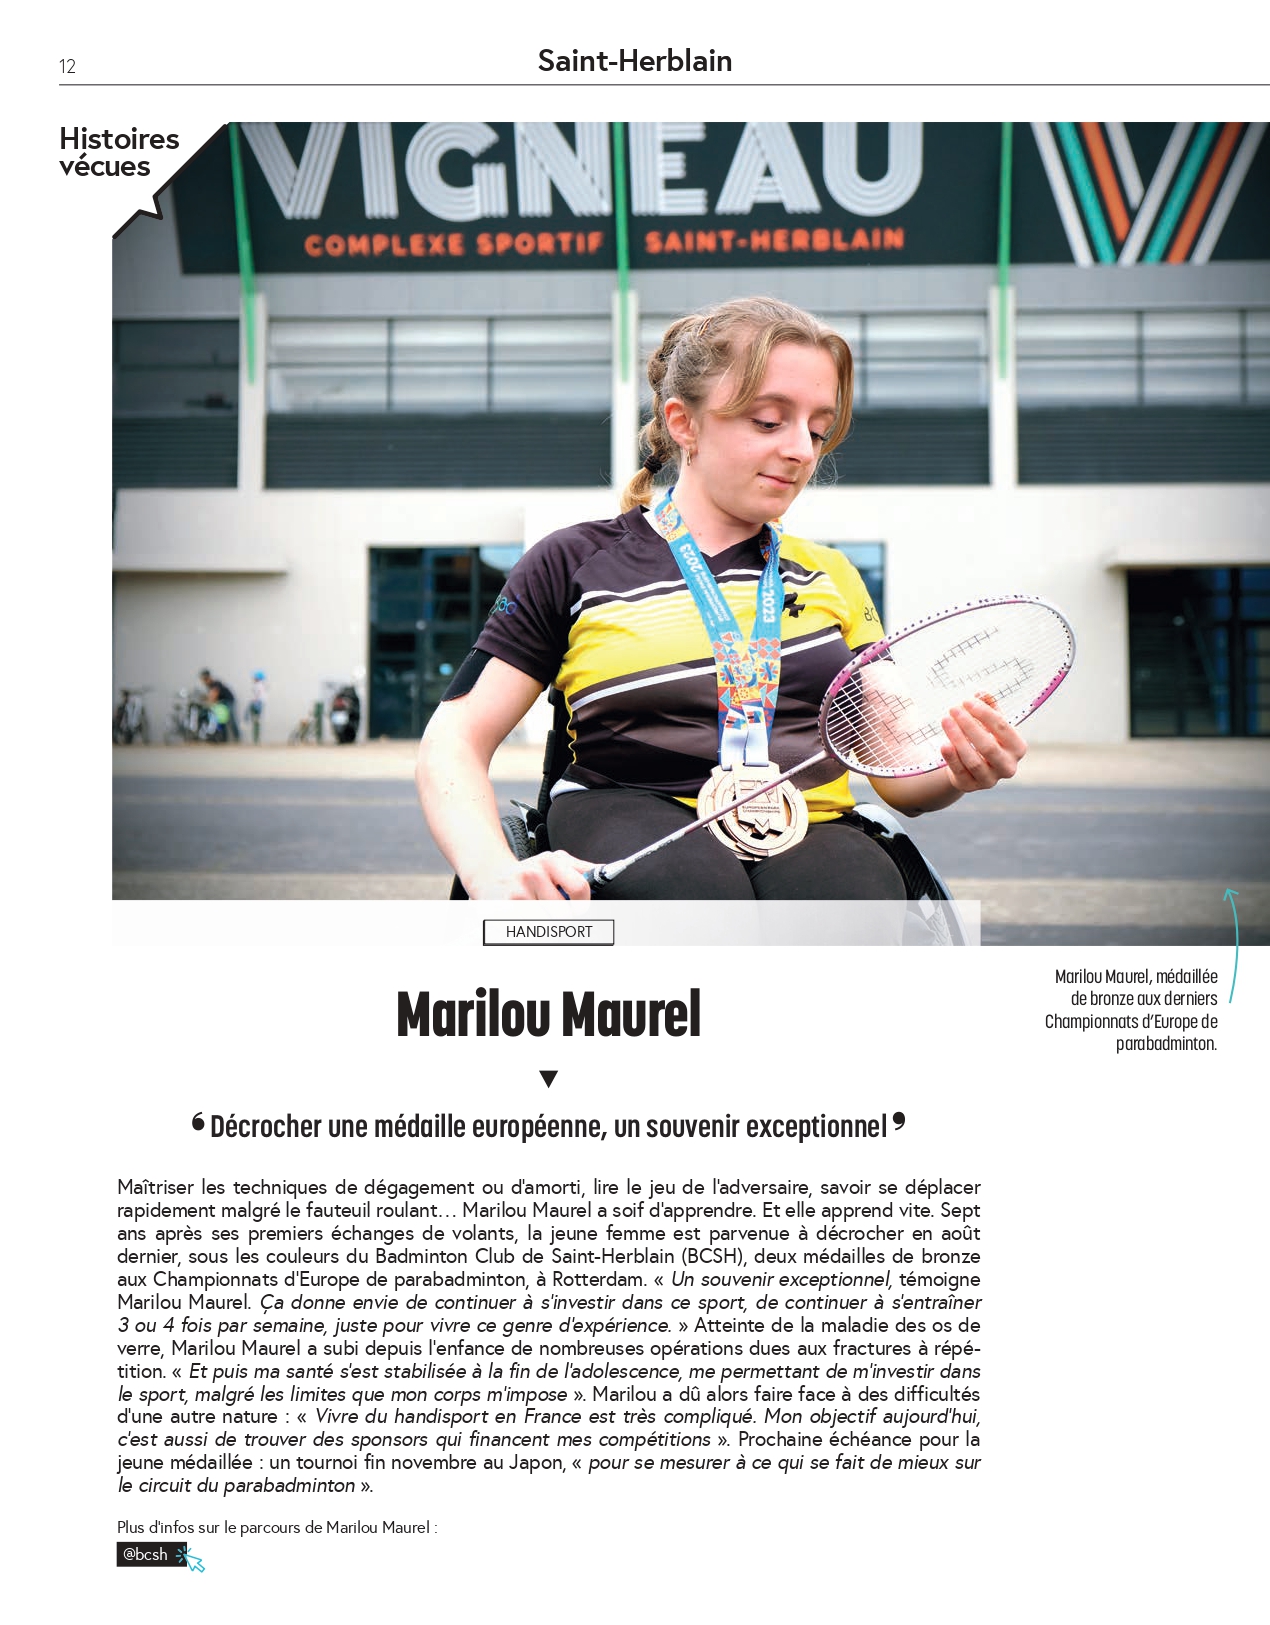 Marilou Maurel à l’honneur dans le magazine Saint-Herblain!